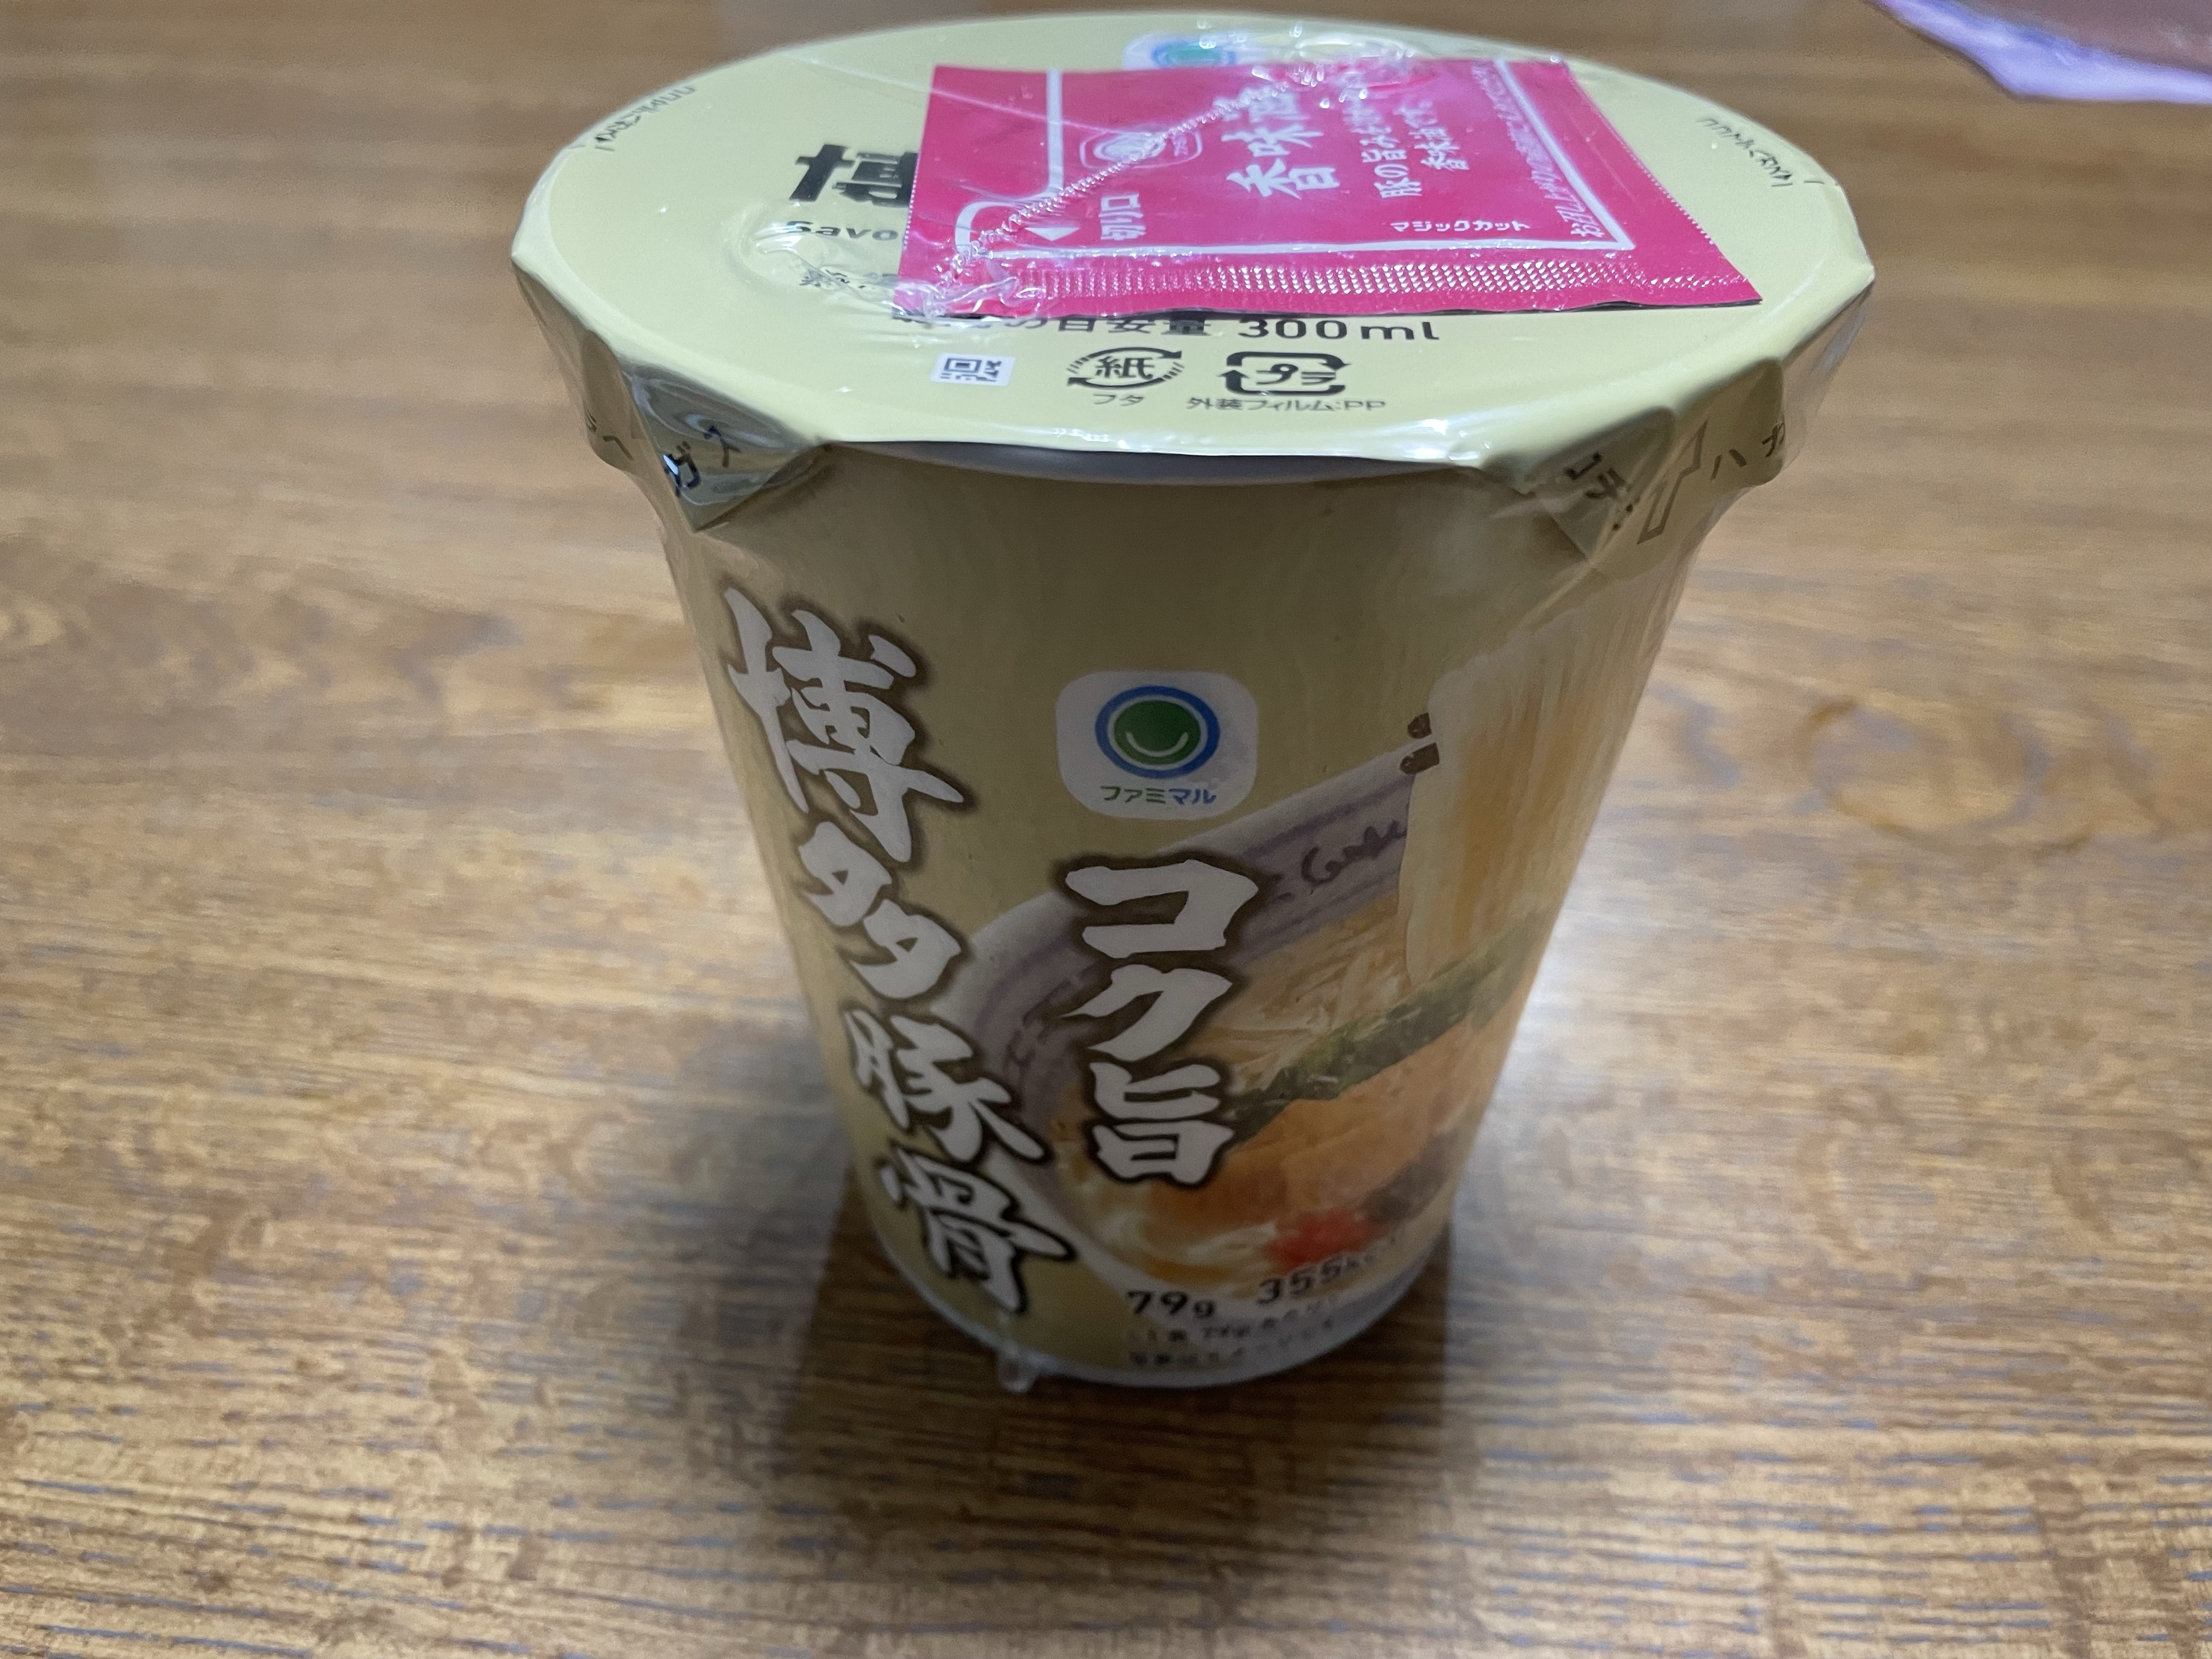 【日清食品×ファミマル】コク旨博多豚骨ラーメンを食べてみた!!